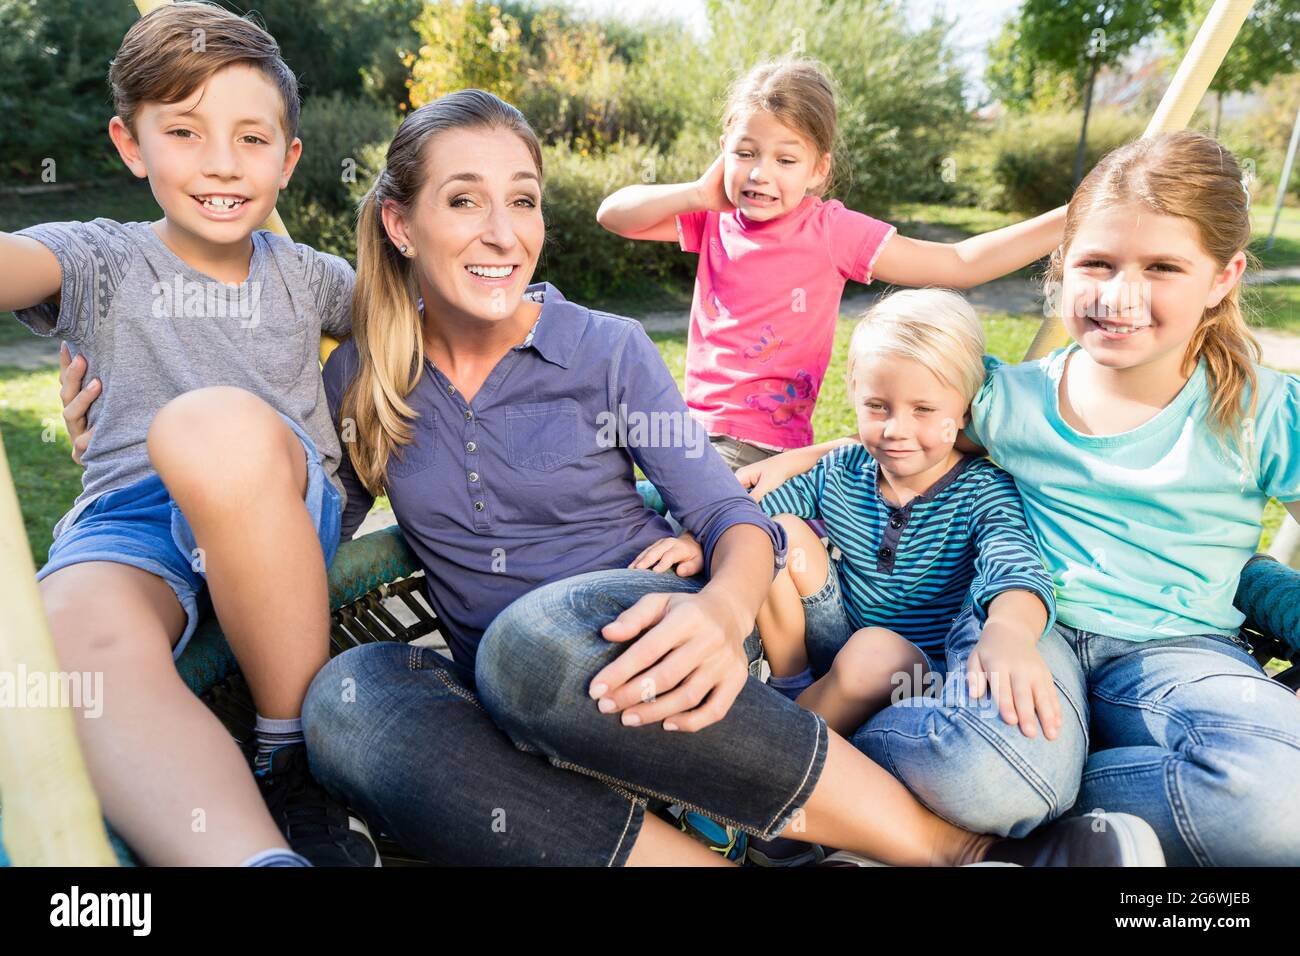 Glückliche Familie mit Mutter, Söhnen und Töchtern, die zusammen Fotos machen Stockfoto